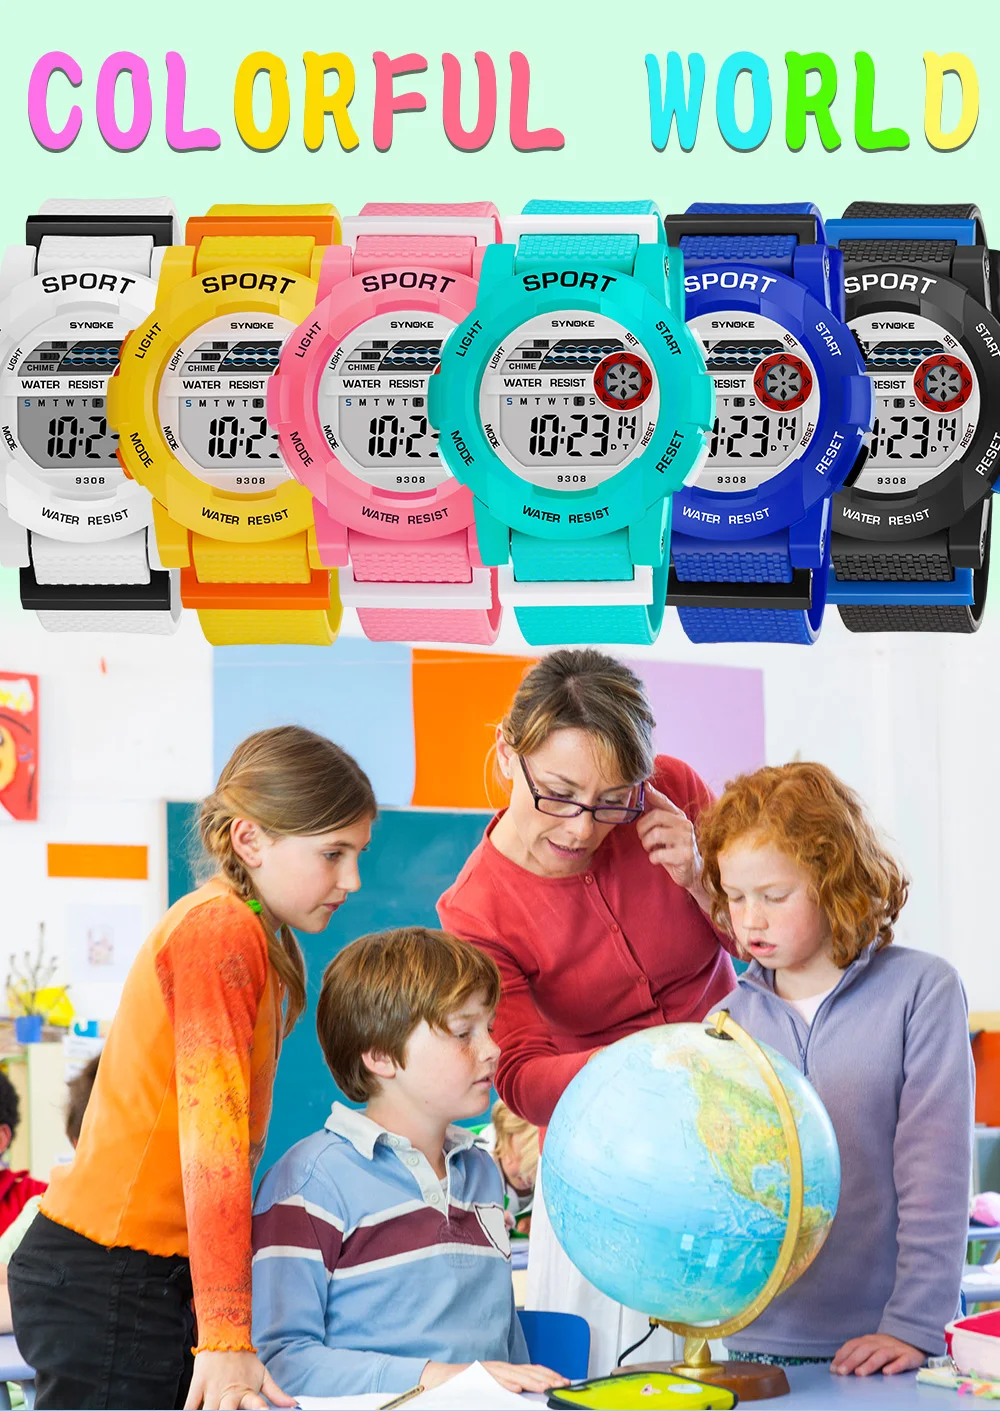 Synoke, детские часы, светодиодный, цифровые, 50 м, водонепроницаемые, детские, спортивные, многофункциональные, электронные, для мальчиков, студентов, наручные часы